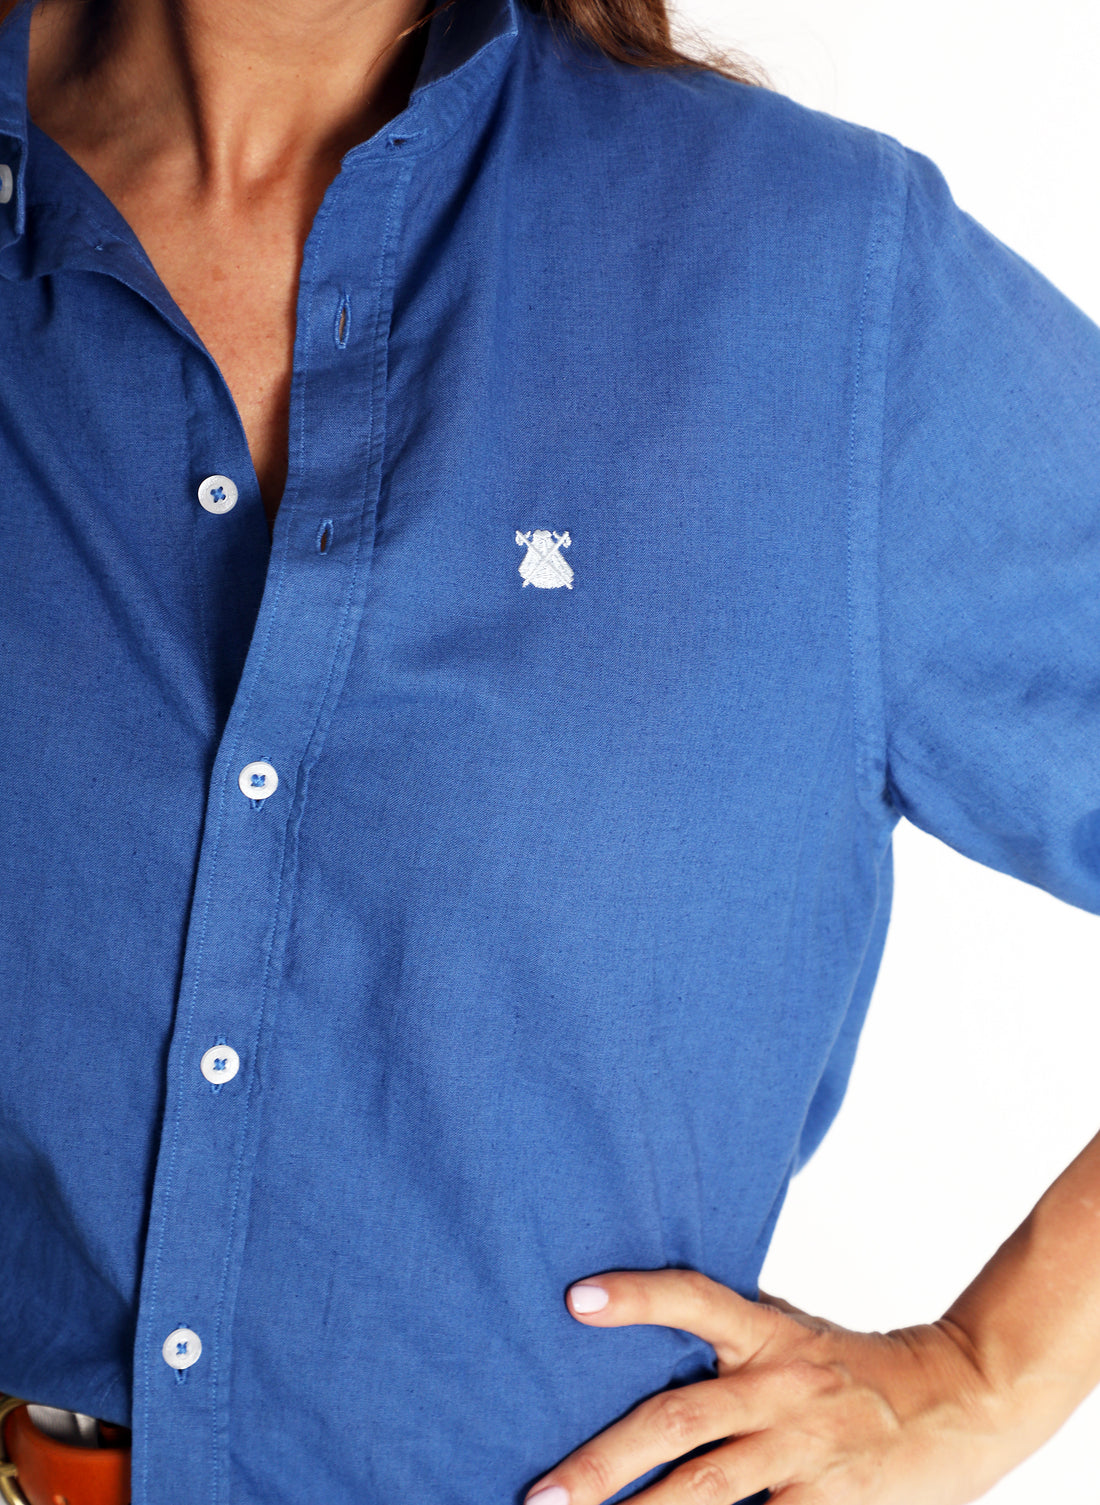 Indigo Blue Linen Oversize Women's Shirt